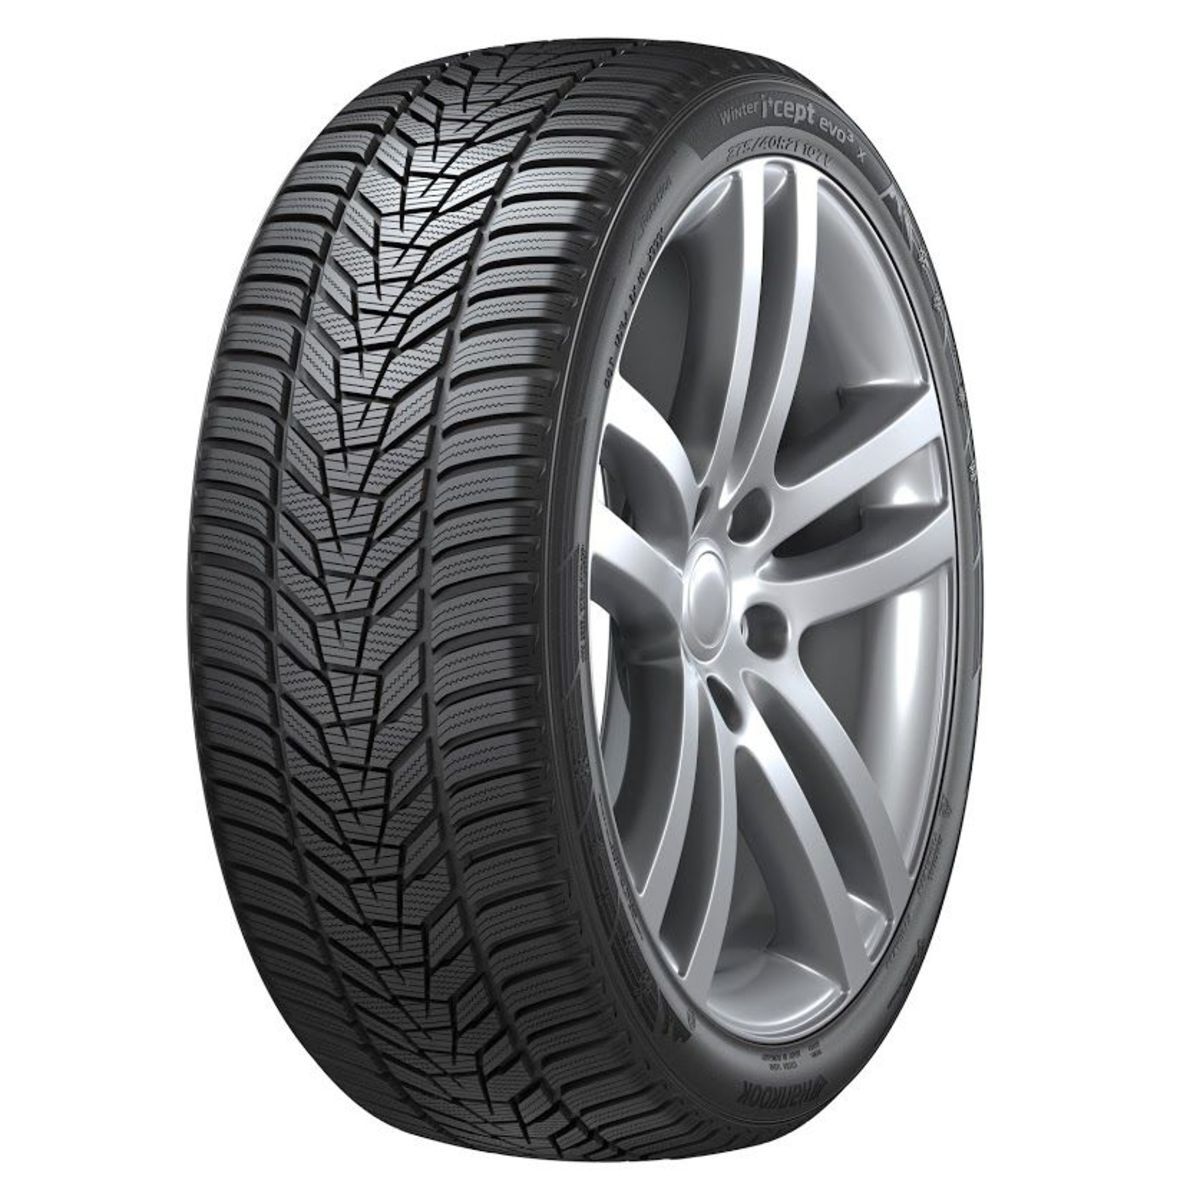 Neumáticos de invierno HANKOOK Winter i*cept evo3 X W330A 235/50R20 XL 104W